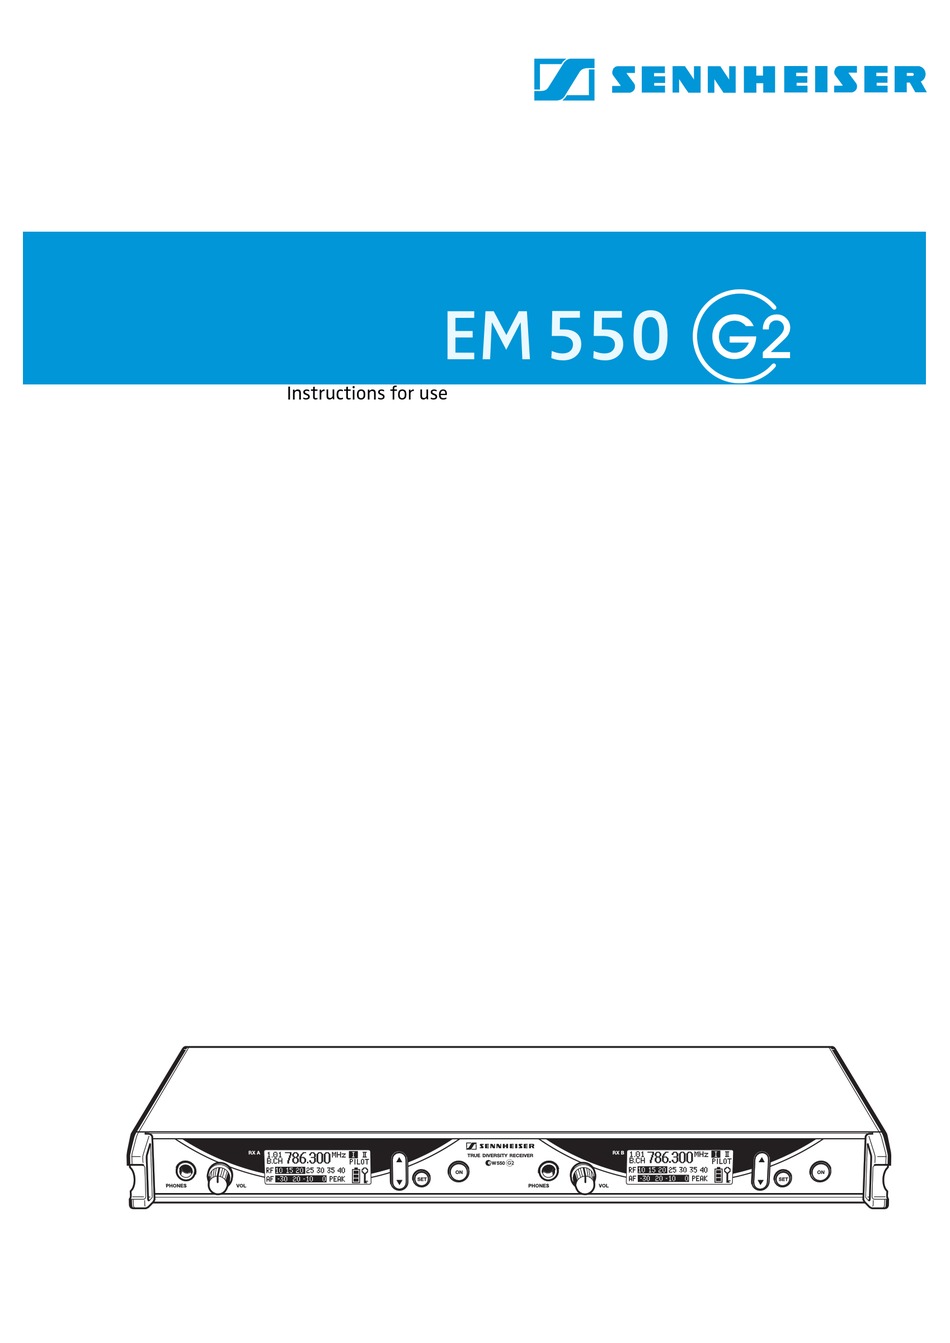 Sennheiser Em 550 G2 Instructions For Use Manual Pdf Download Manualslib